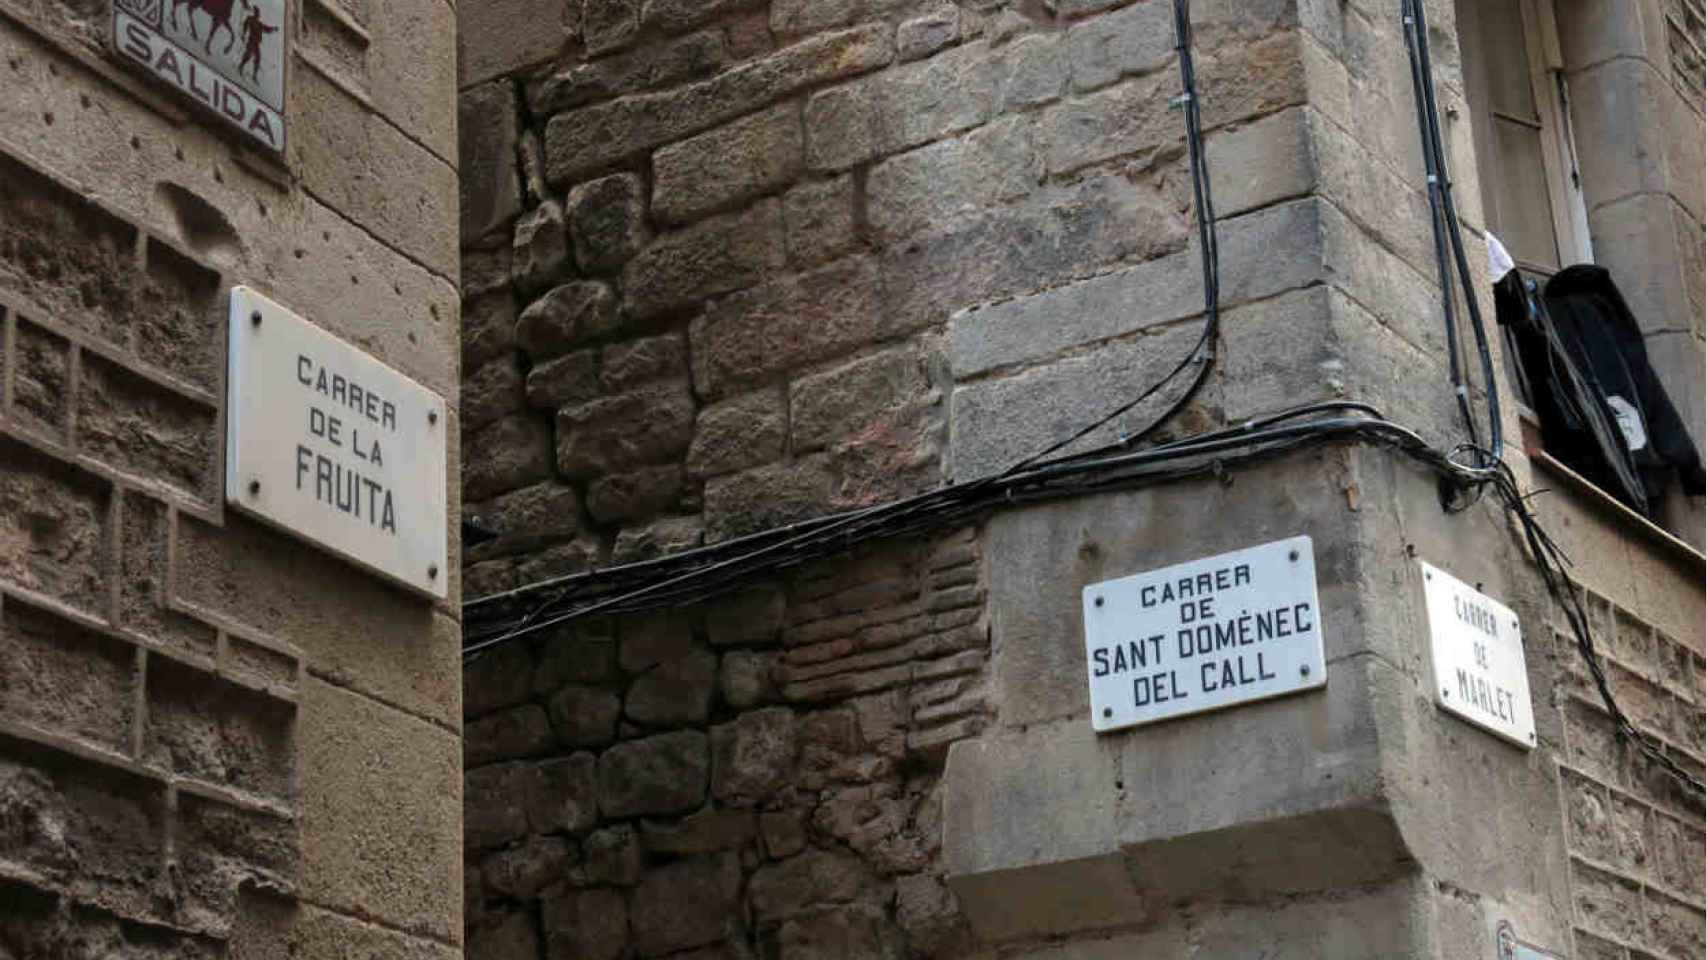 Rótulo de la calle Sant Domènec de Call, en el barrio Gòtic